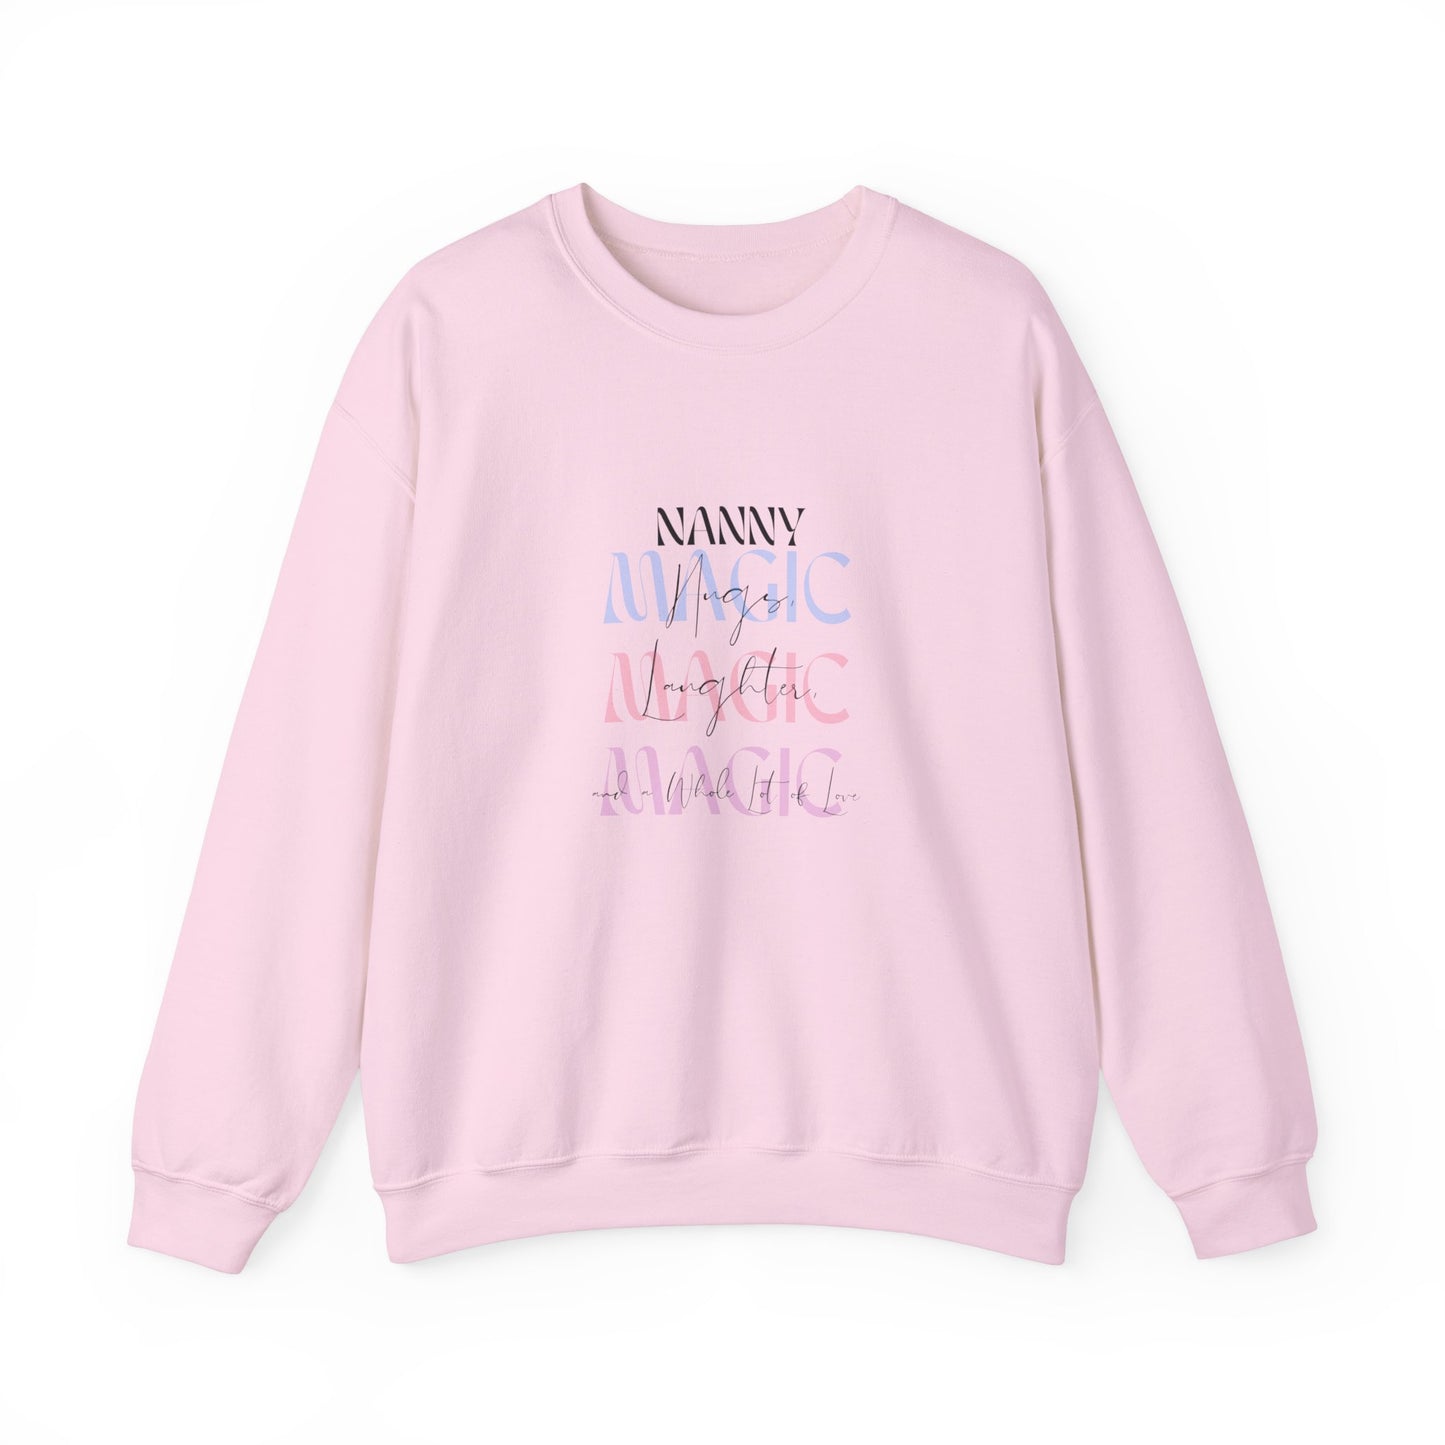 Nanny Magic Crewneck Sweatshirt